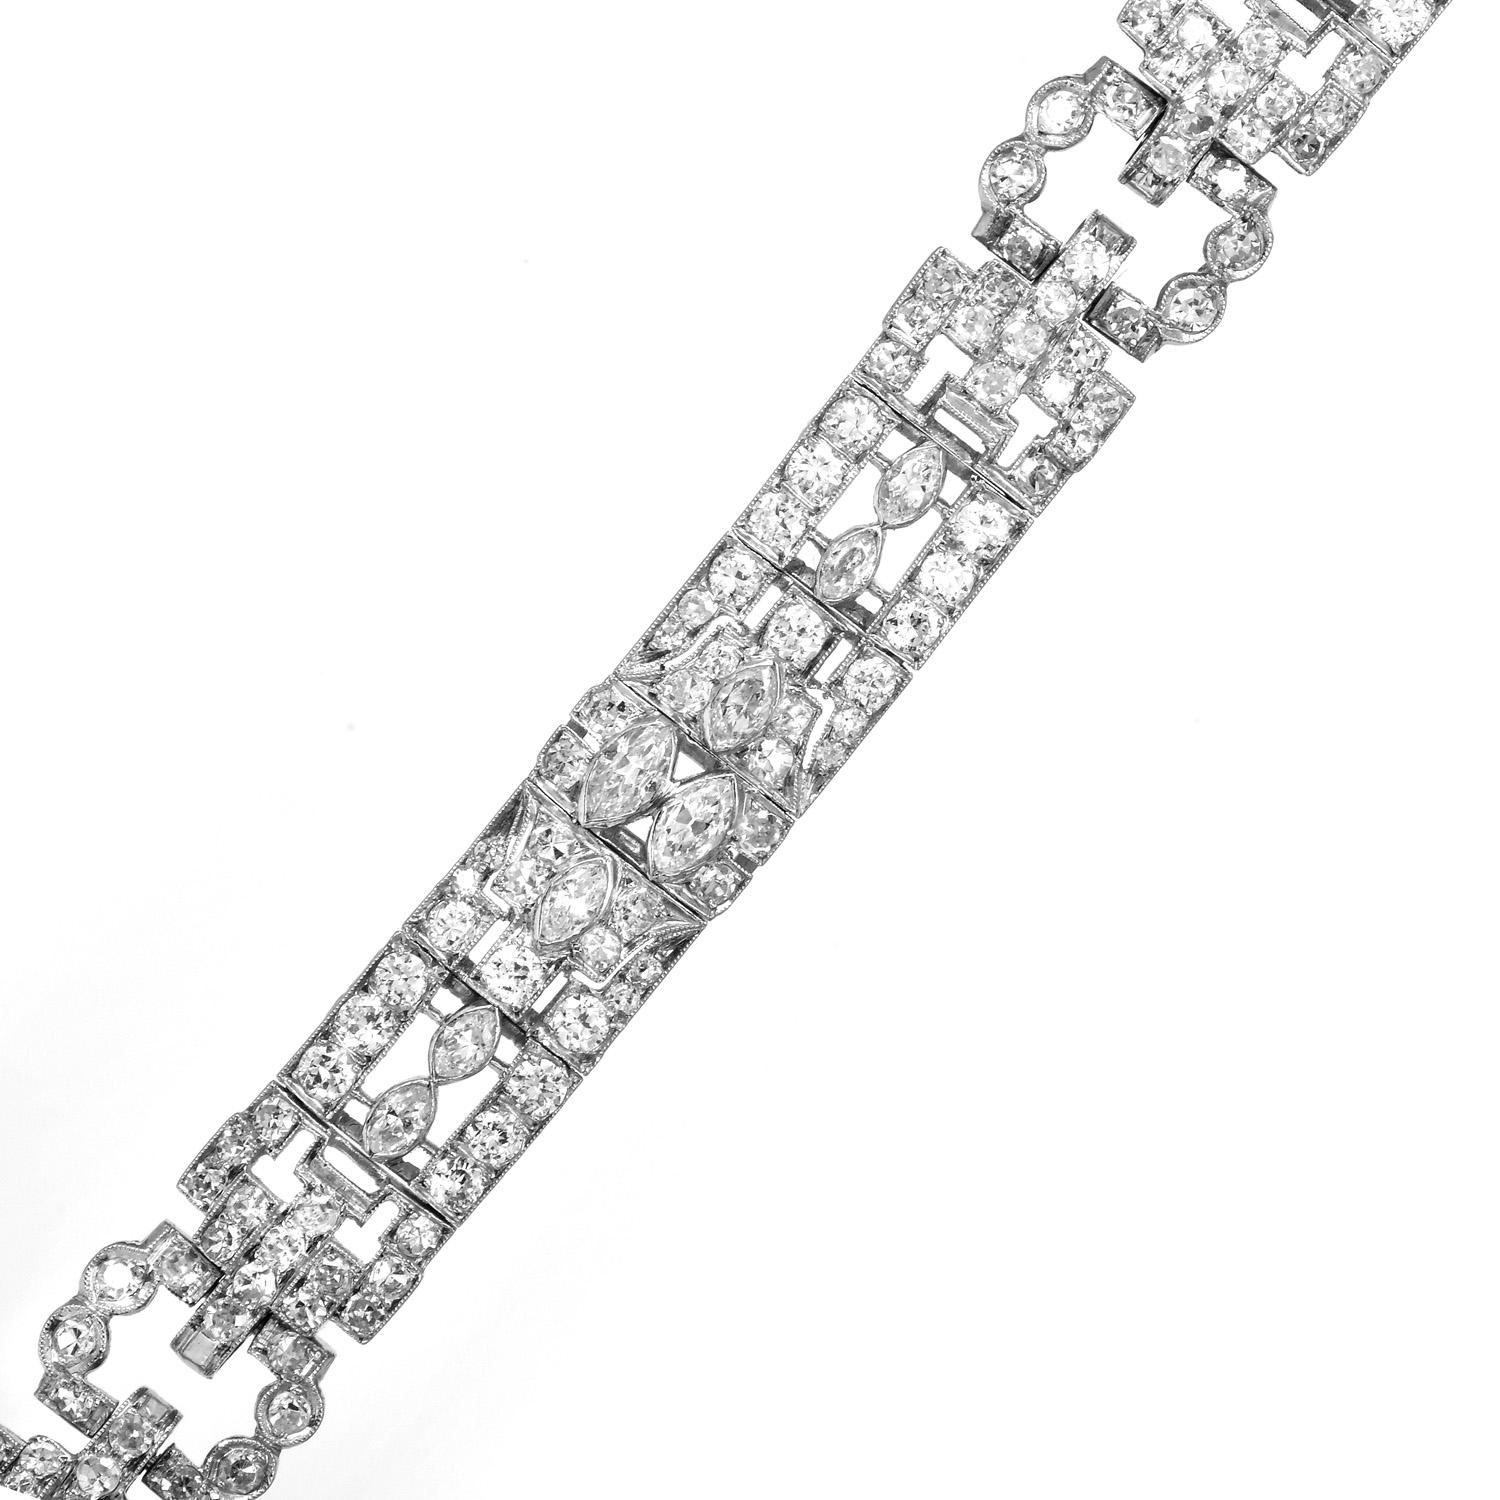 Découvrez la beauté délicate de ce bracelet à maillons géométriques Art déco.

Ce remarquable bracelet élégant et éclatant est réalisé en platine de qualité.  Le centre des maillons est orné de 24 diamants authentiques de taille Marquise et d'un